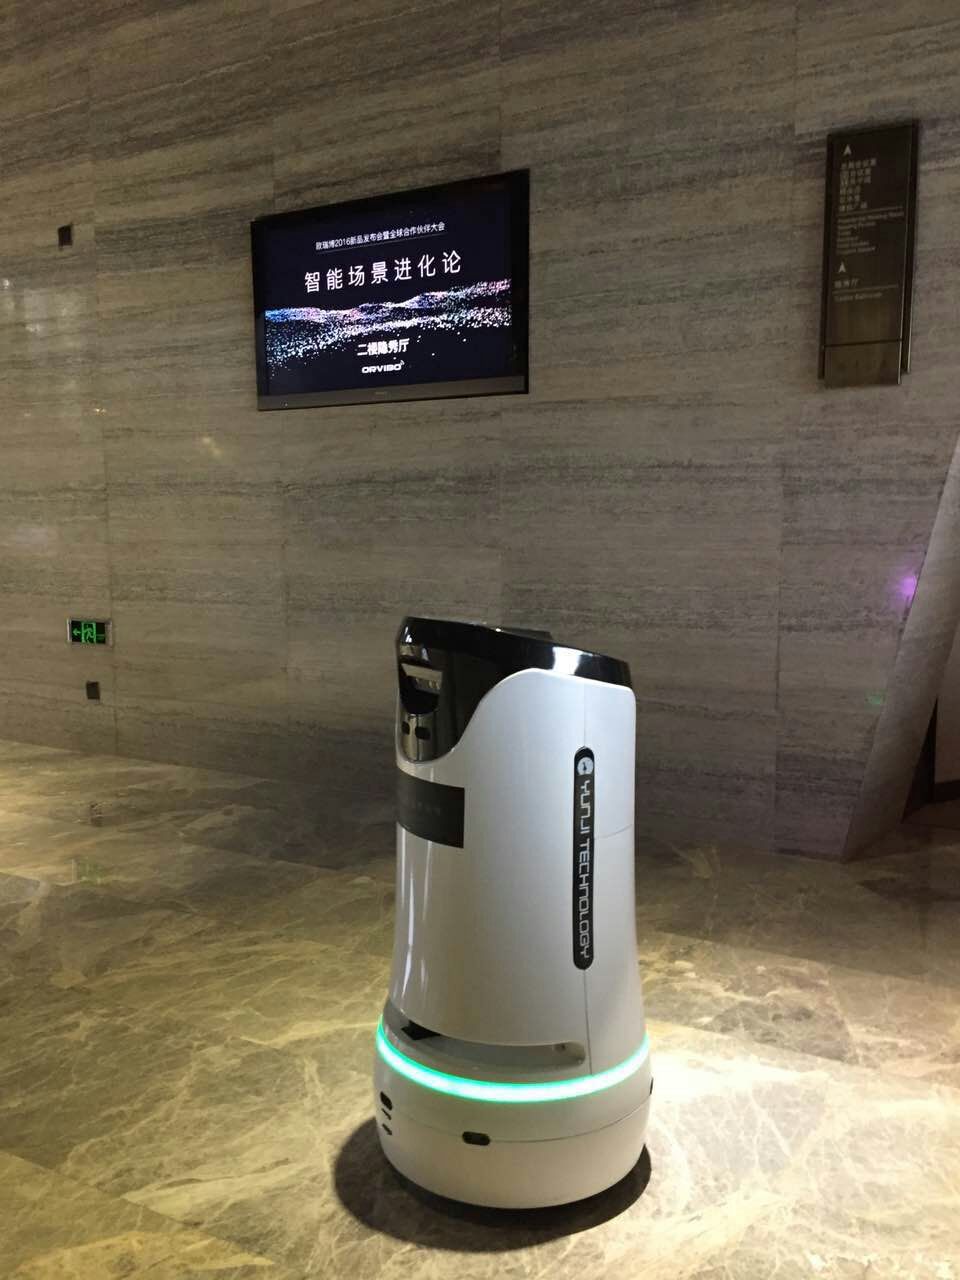 酒店机器人租赁酒店迎宾机器人租赁酒店服务机器人酒店递送机器人酒店智能上电梯机器人可以选择苏州一米机器人